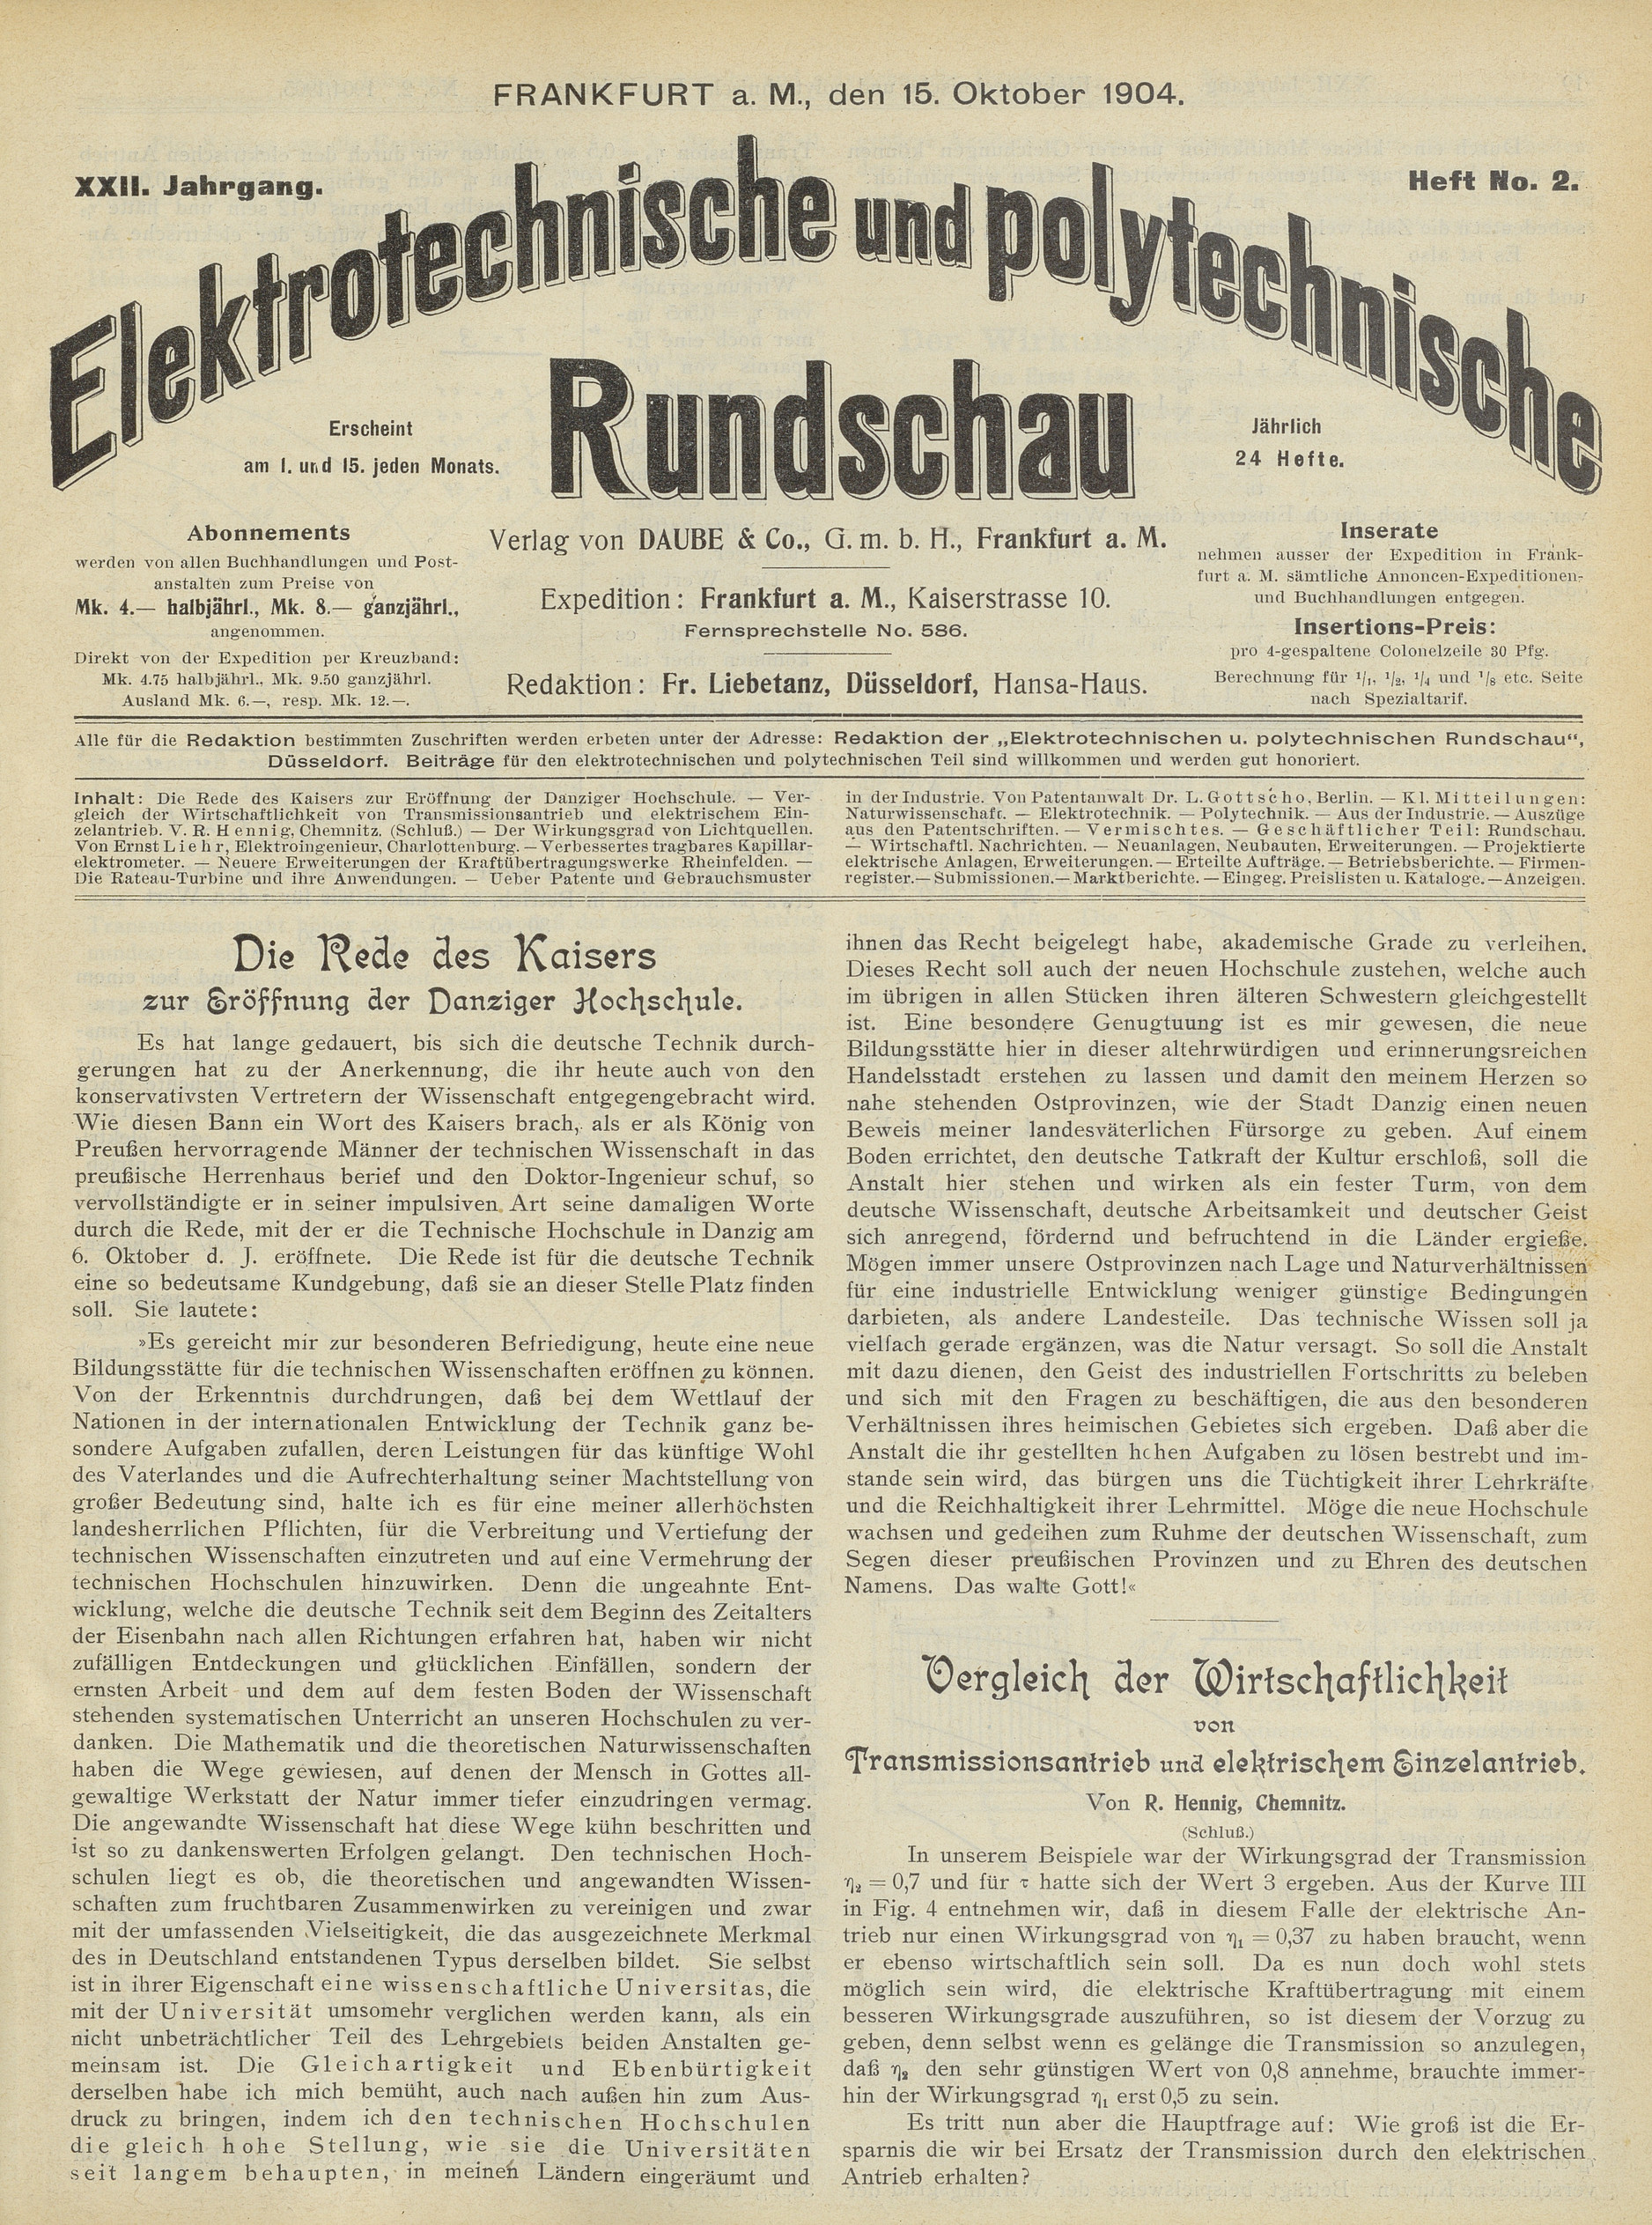 Elektrotechnische und polytechnische Rundschau, XXII. Jahrgang, Heft No. 2